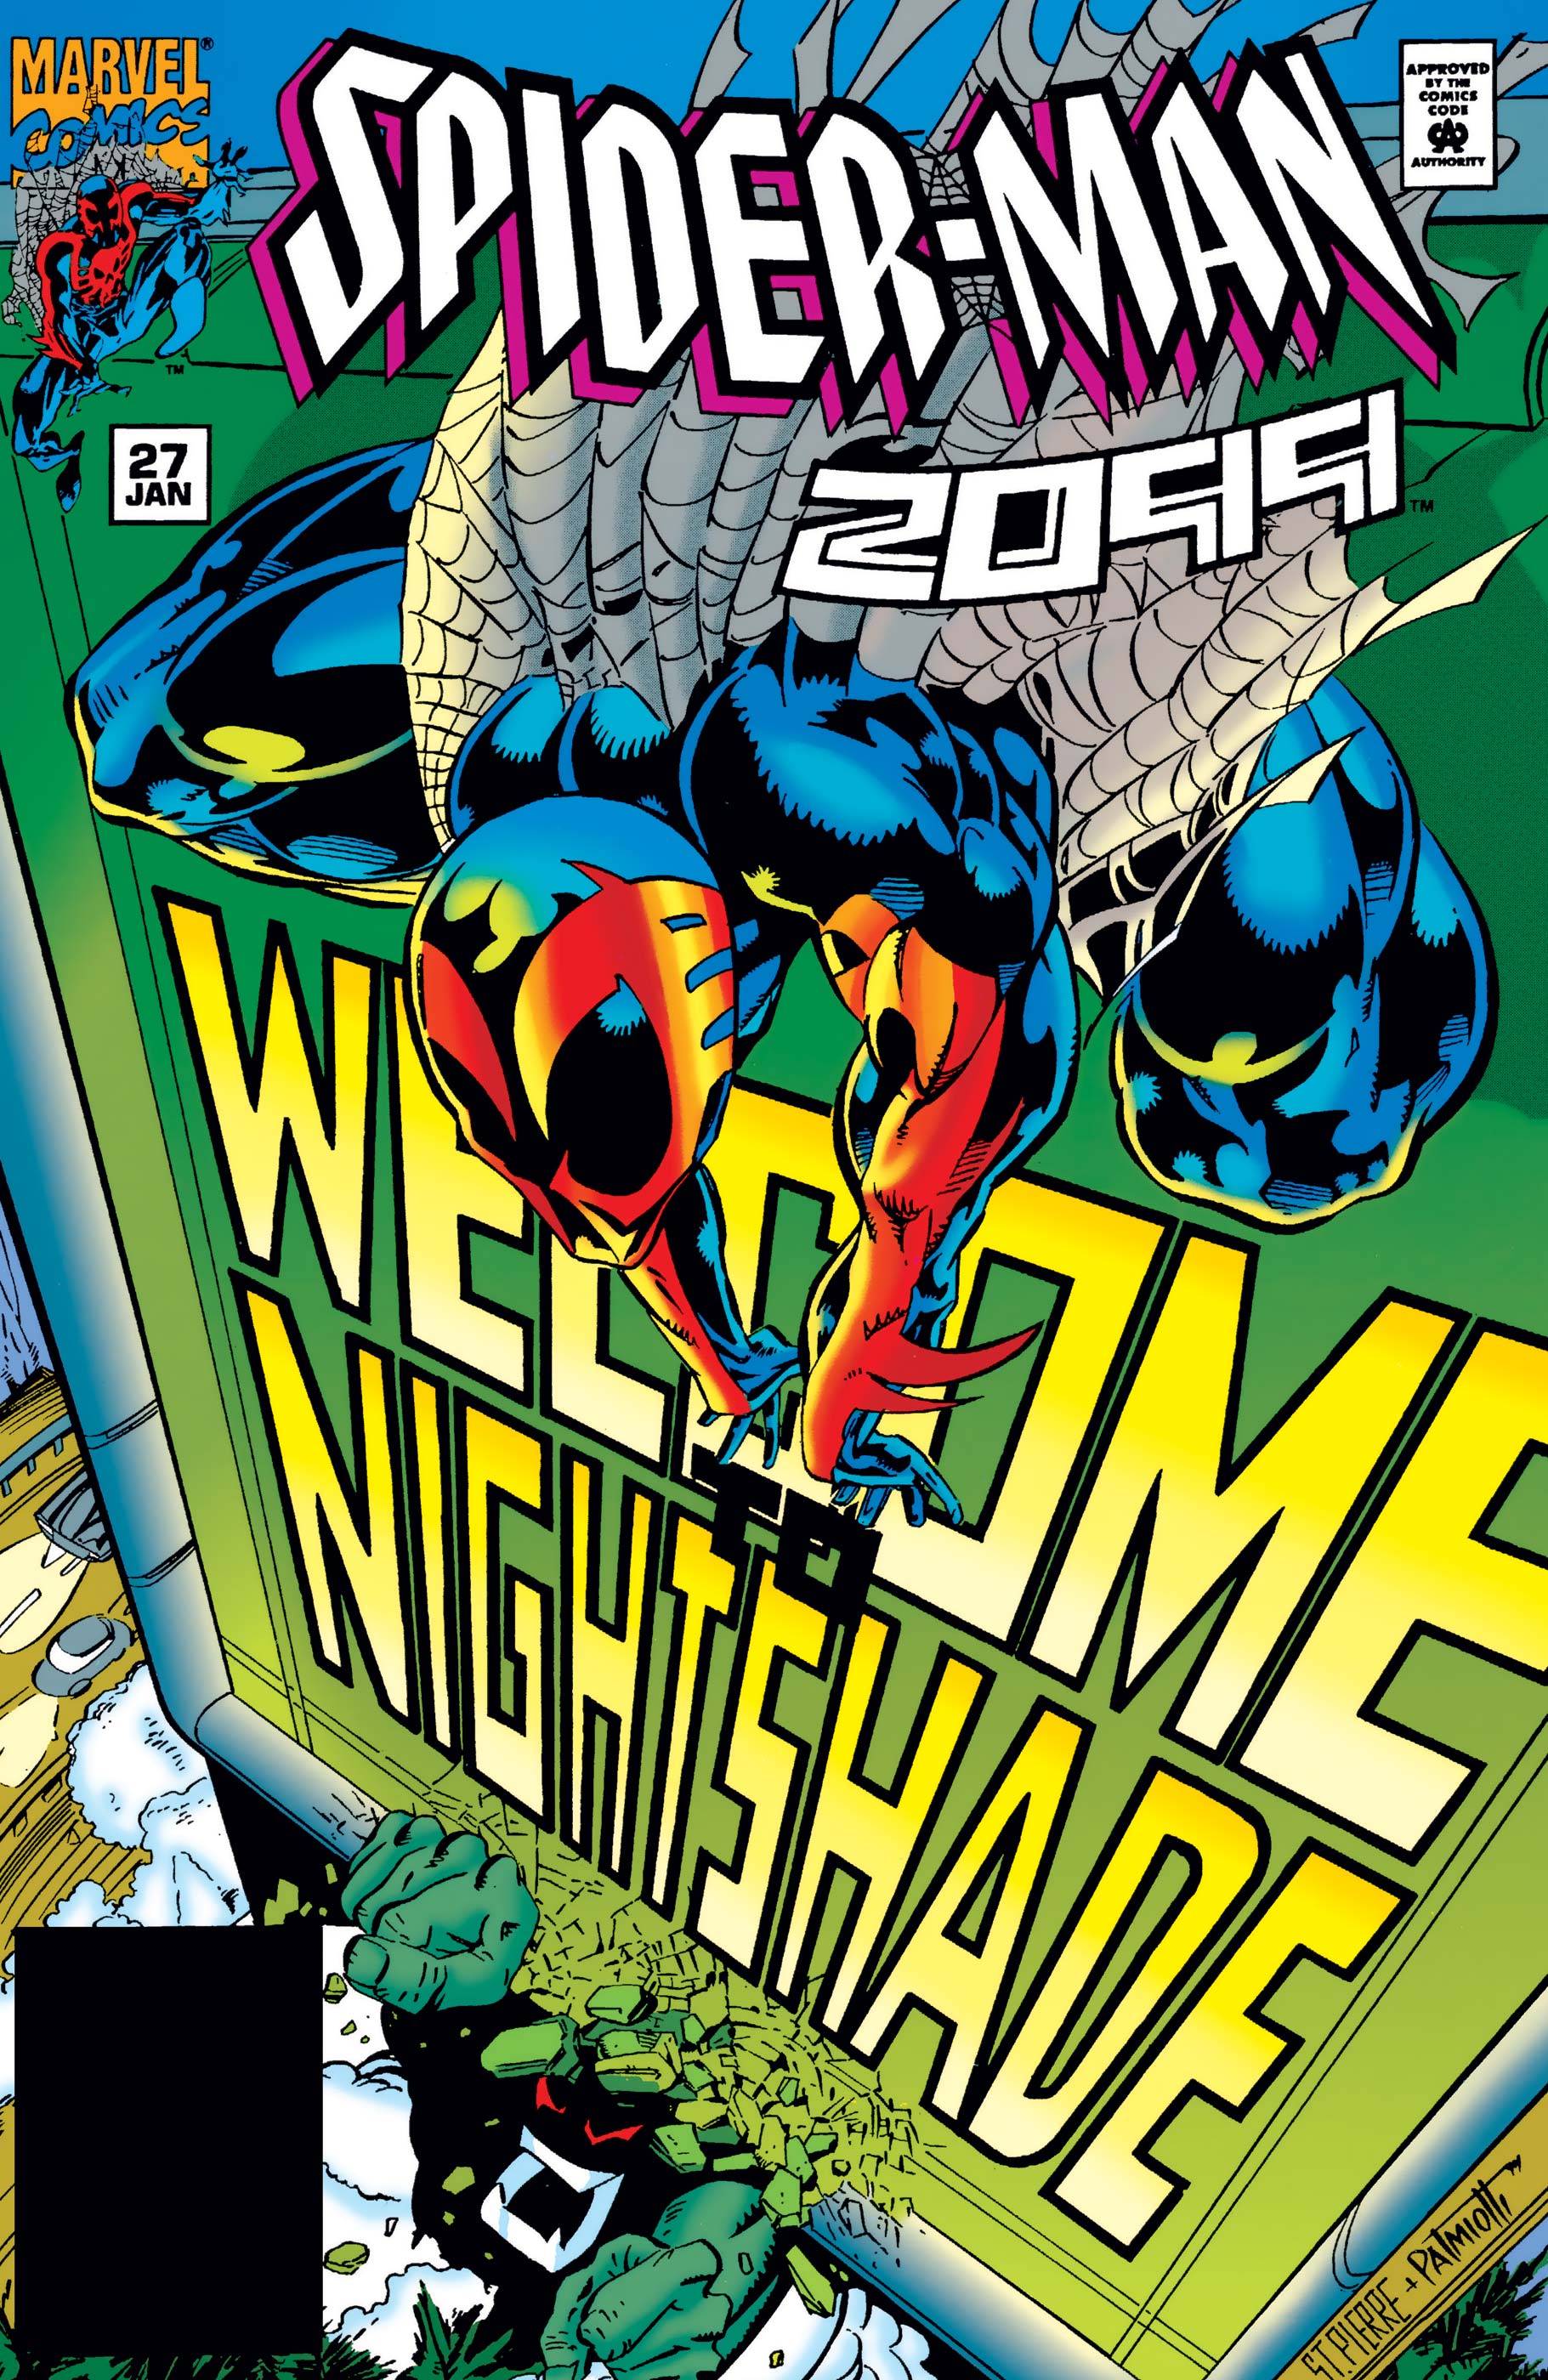 Spider-Man 2099 (1992) #27